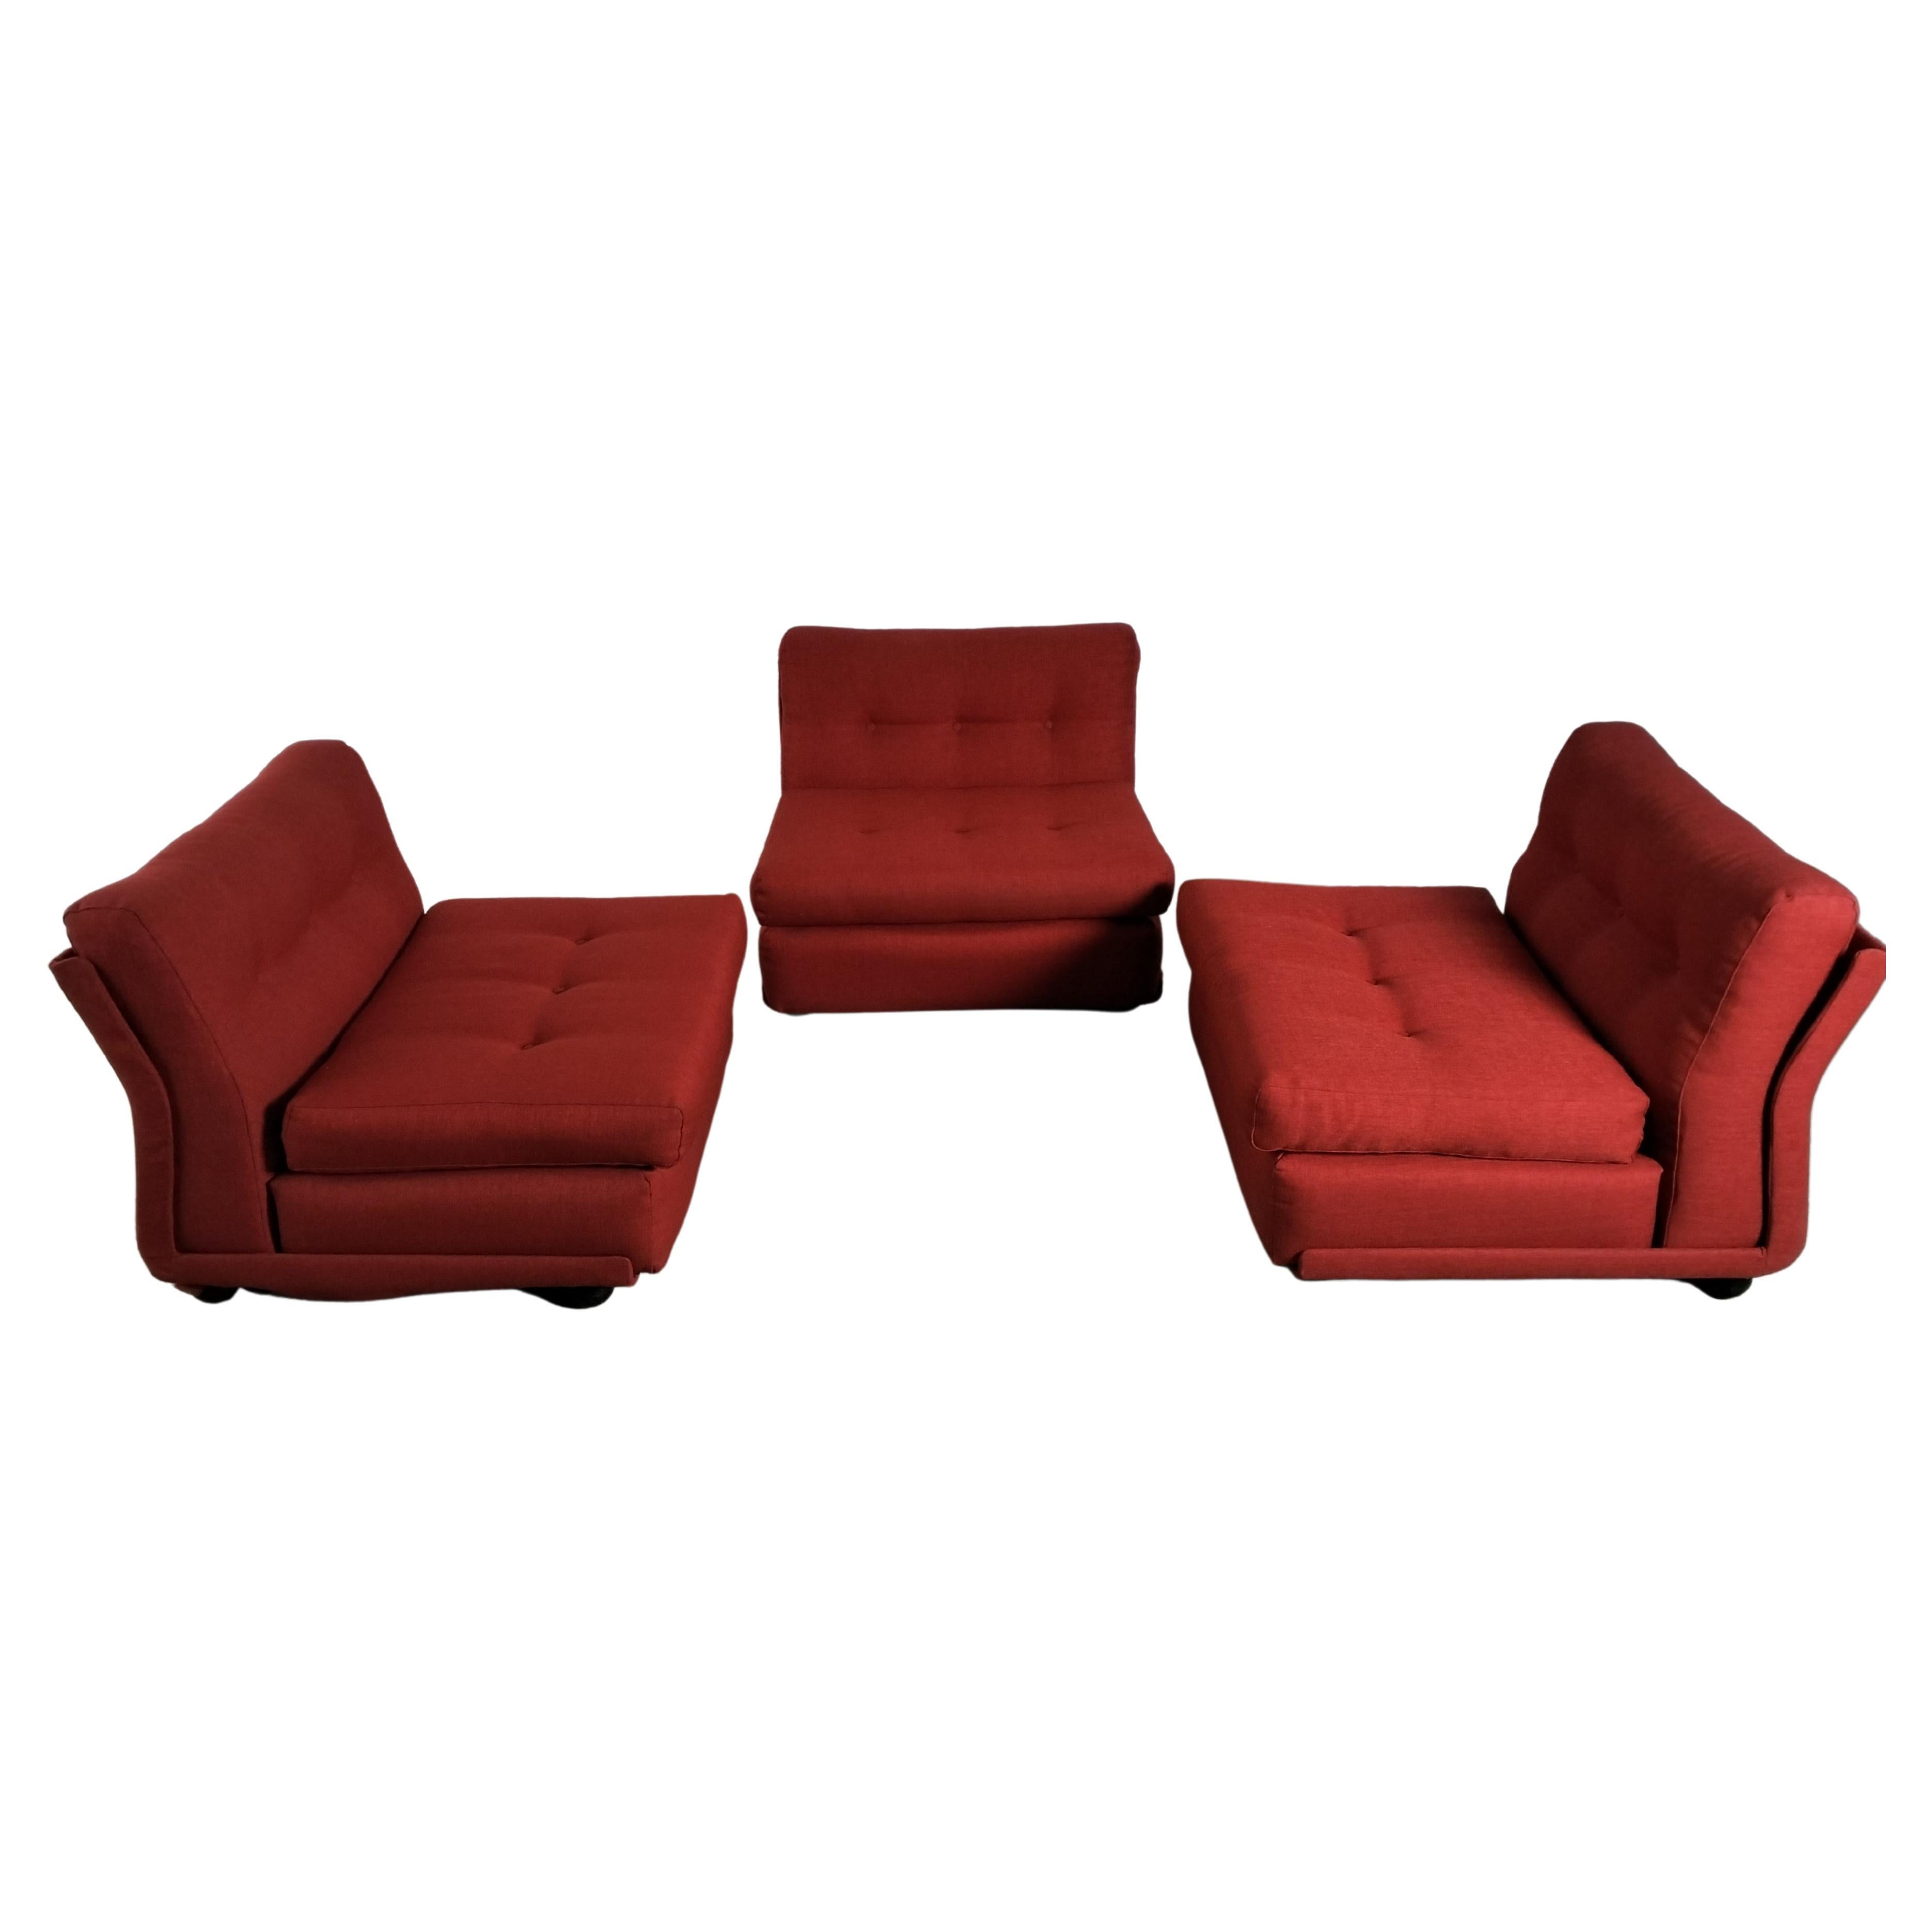 Ensemble de 3 chaises longues/fauteuils Amanta rouges de Mario Bellini pour C&B Italia, années 70